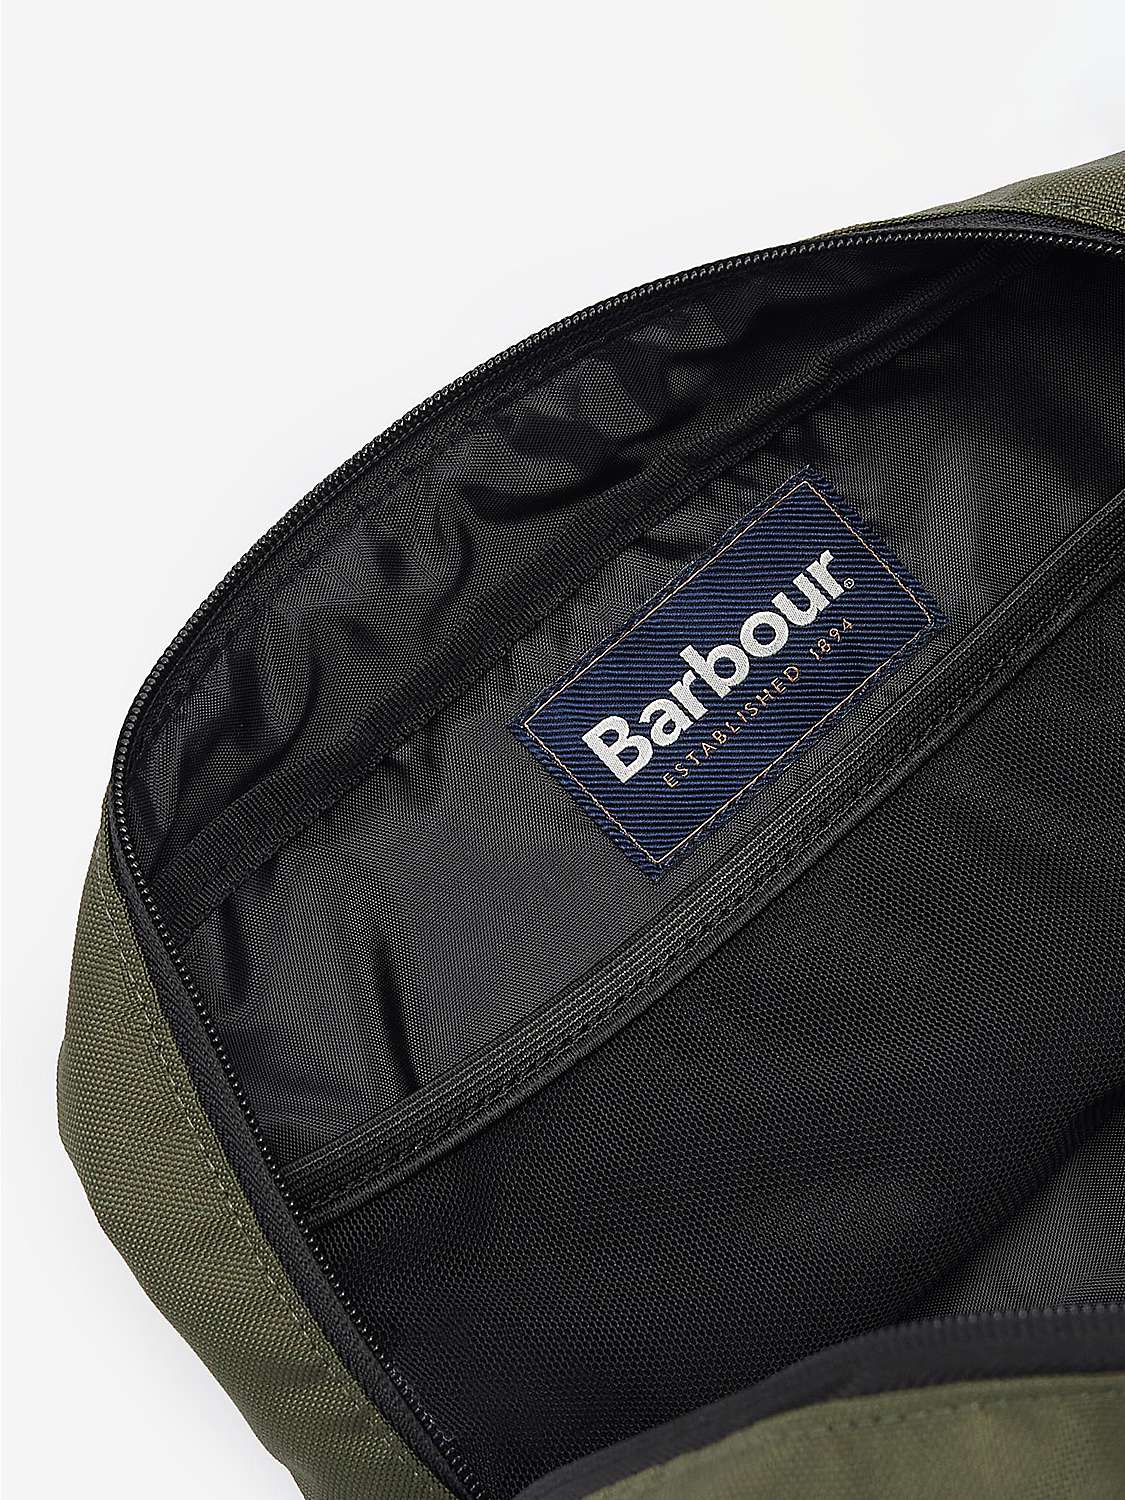 Buy Barbour Arwin Wash Bag, Olive/Black Online at johnlewis.com